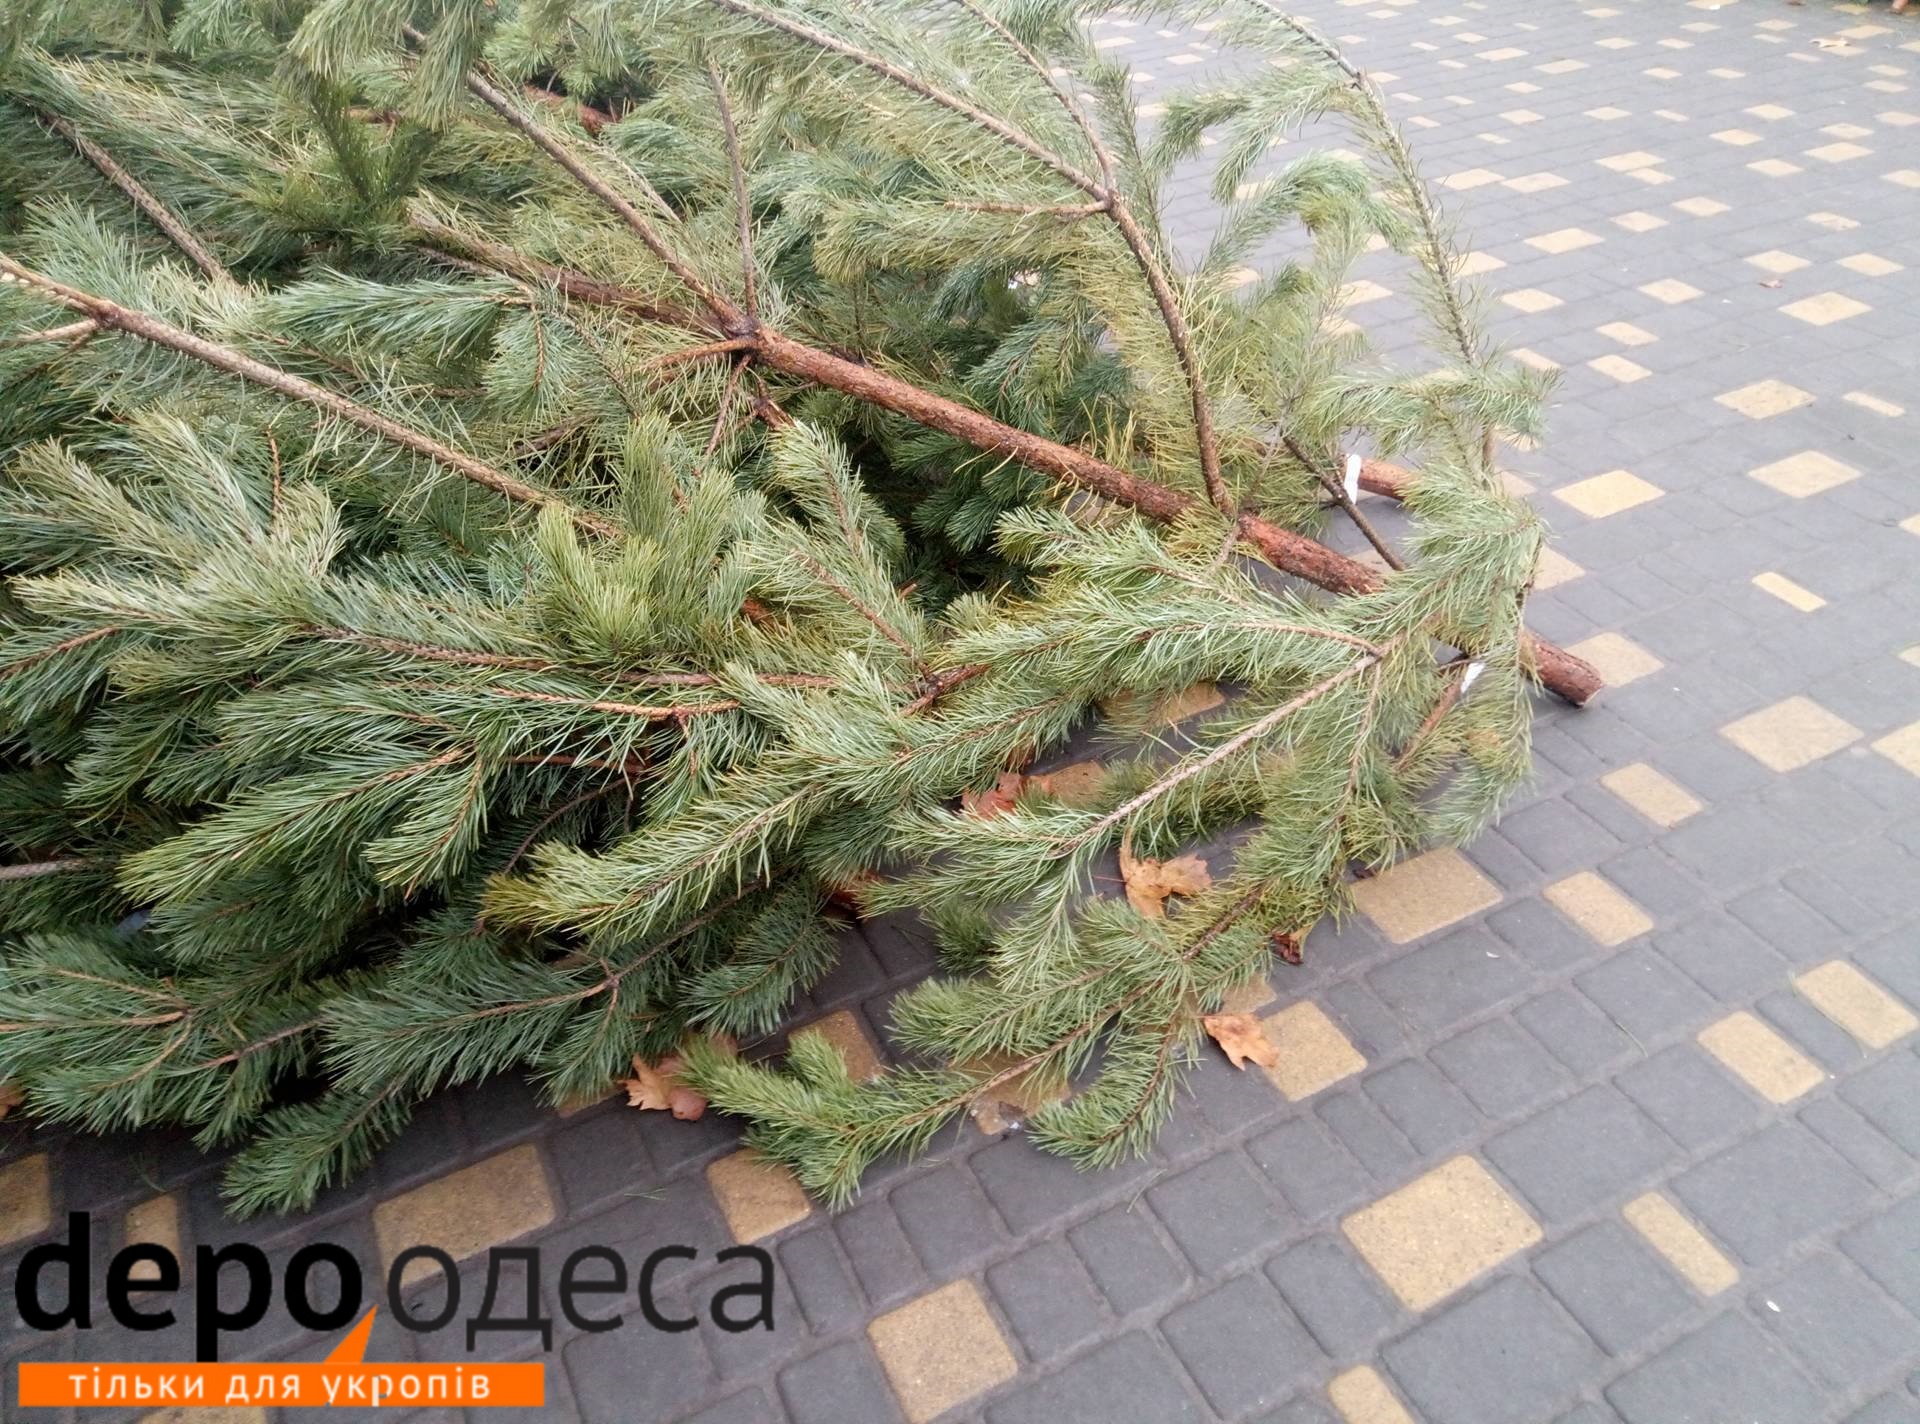 До Нового року кілька днів: вулиці Одеси всипані "правильними ялинками" (ФОТО) - фото 2